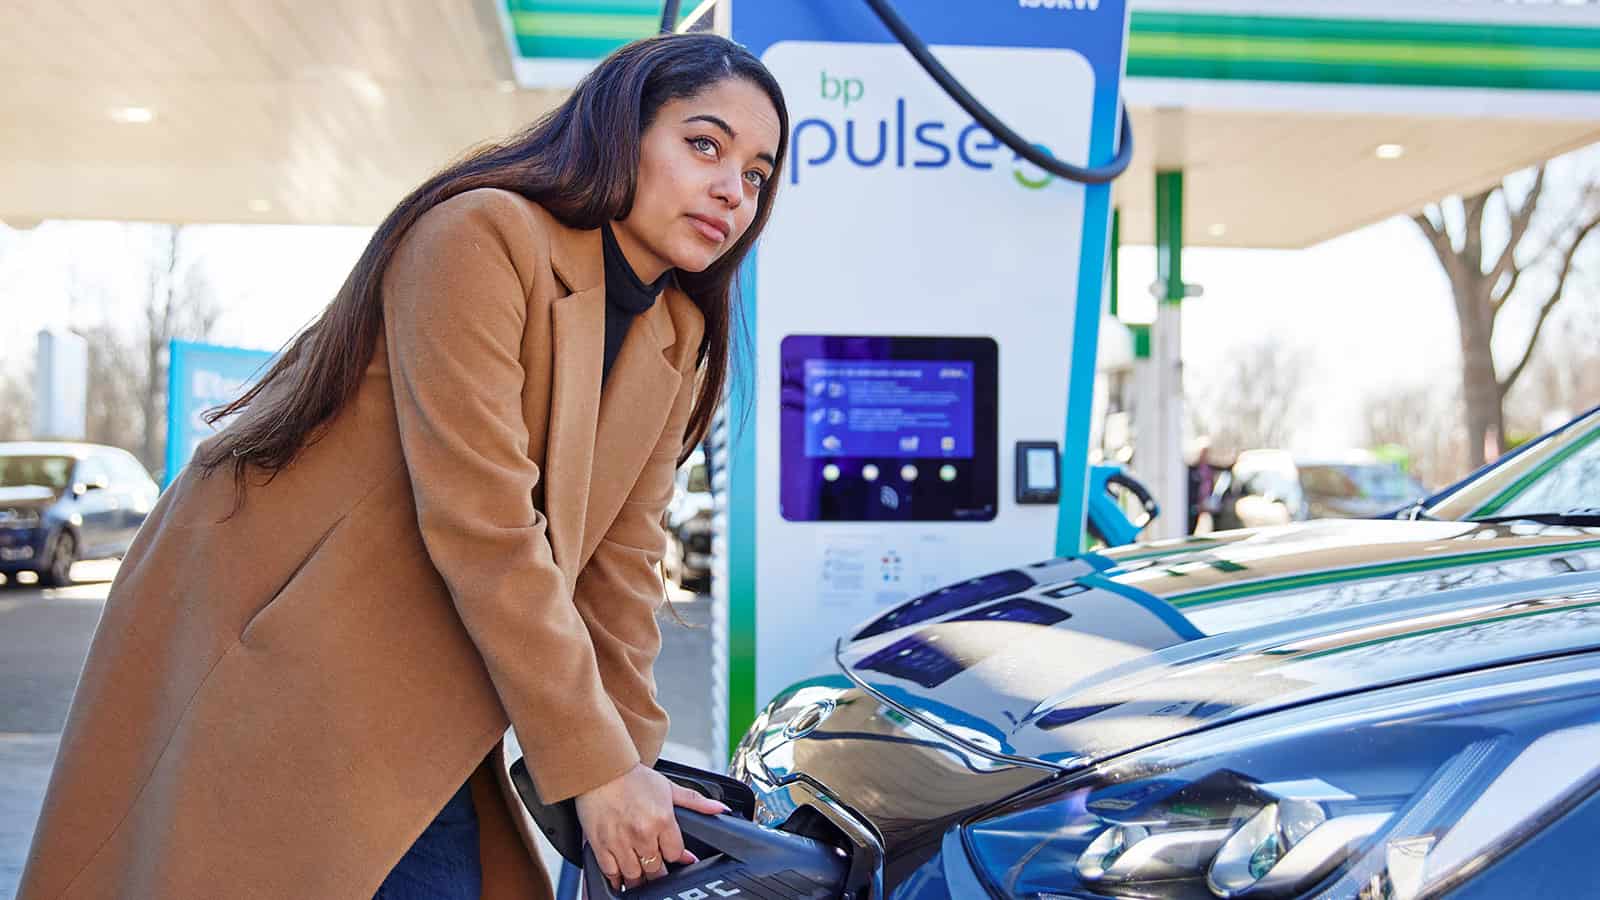 Woman plugging in EV at BP Pulse public charging Gigahub